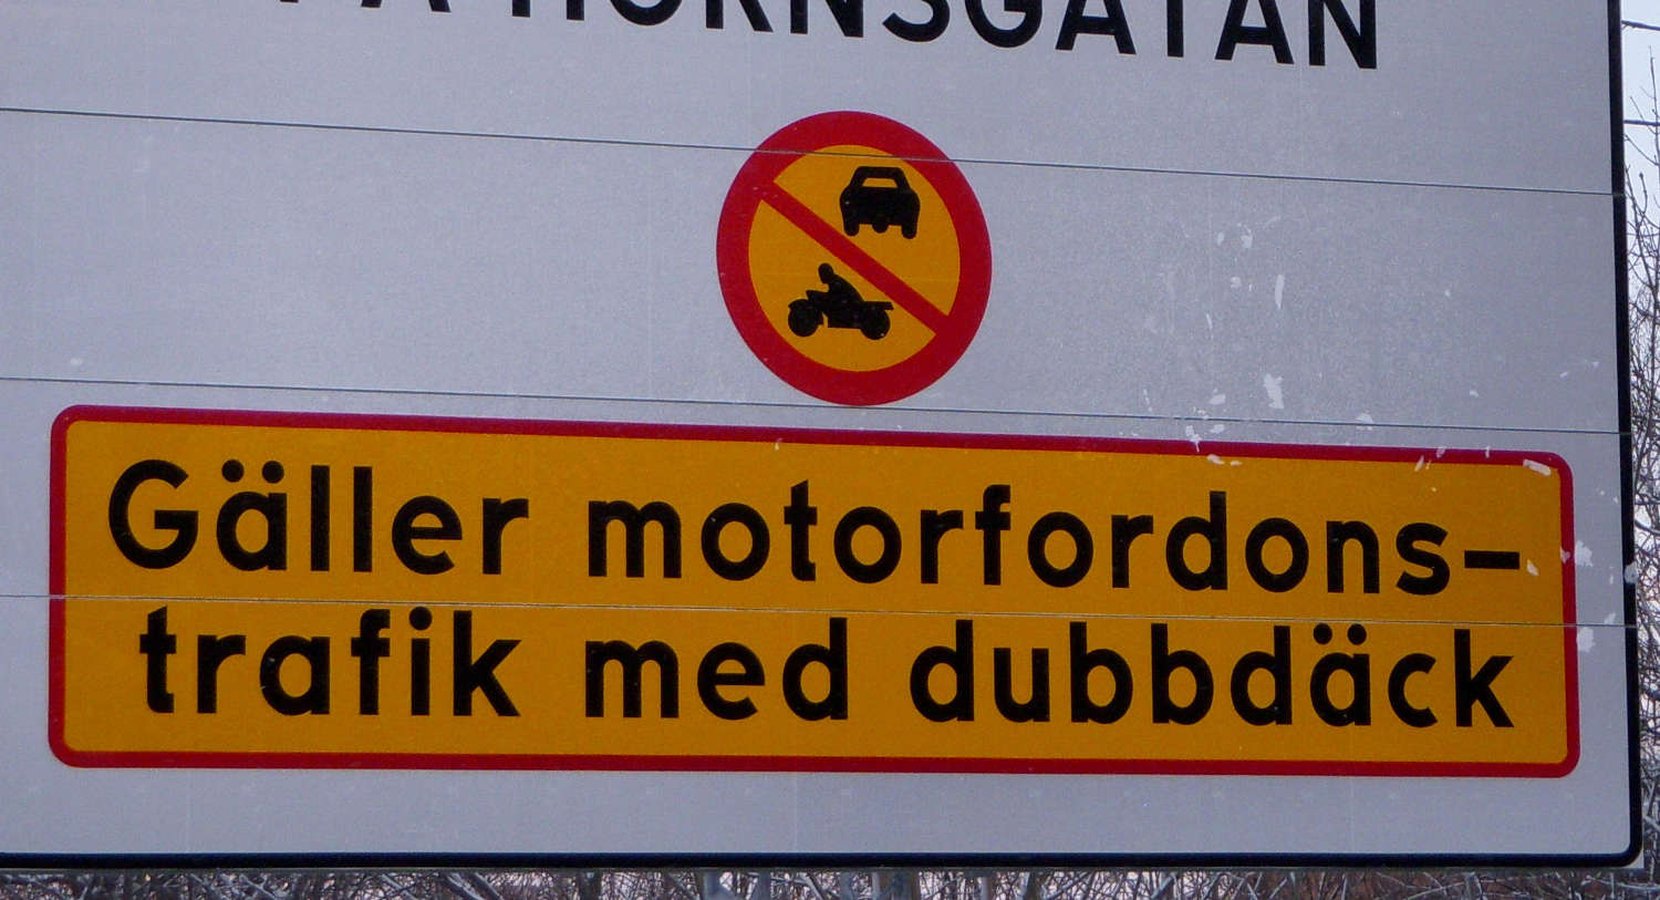 Dubbdäcksförbud infördes på Hornsgatan i Stockholm för att minska utsläppen av partiklar längs gatan. By Holger.Ellgaard (Own work) [CC BY-SA 3.0 (http://creativecommons.org/licenses/by-sa/3.0)], via Wikimedia Commons